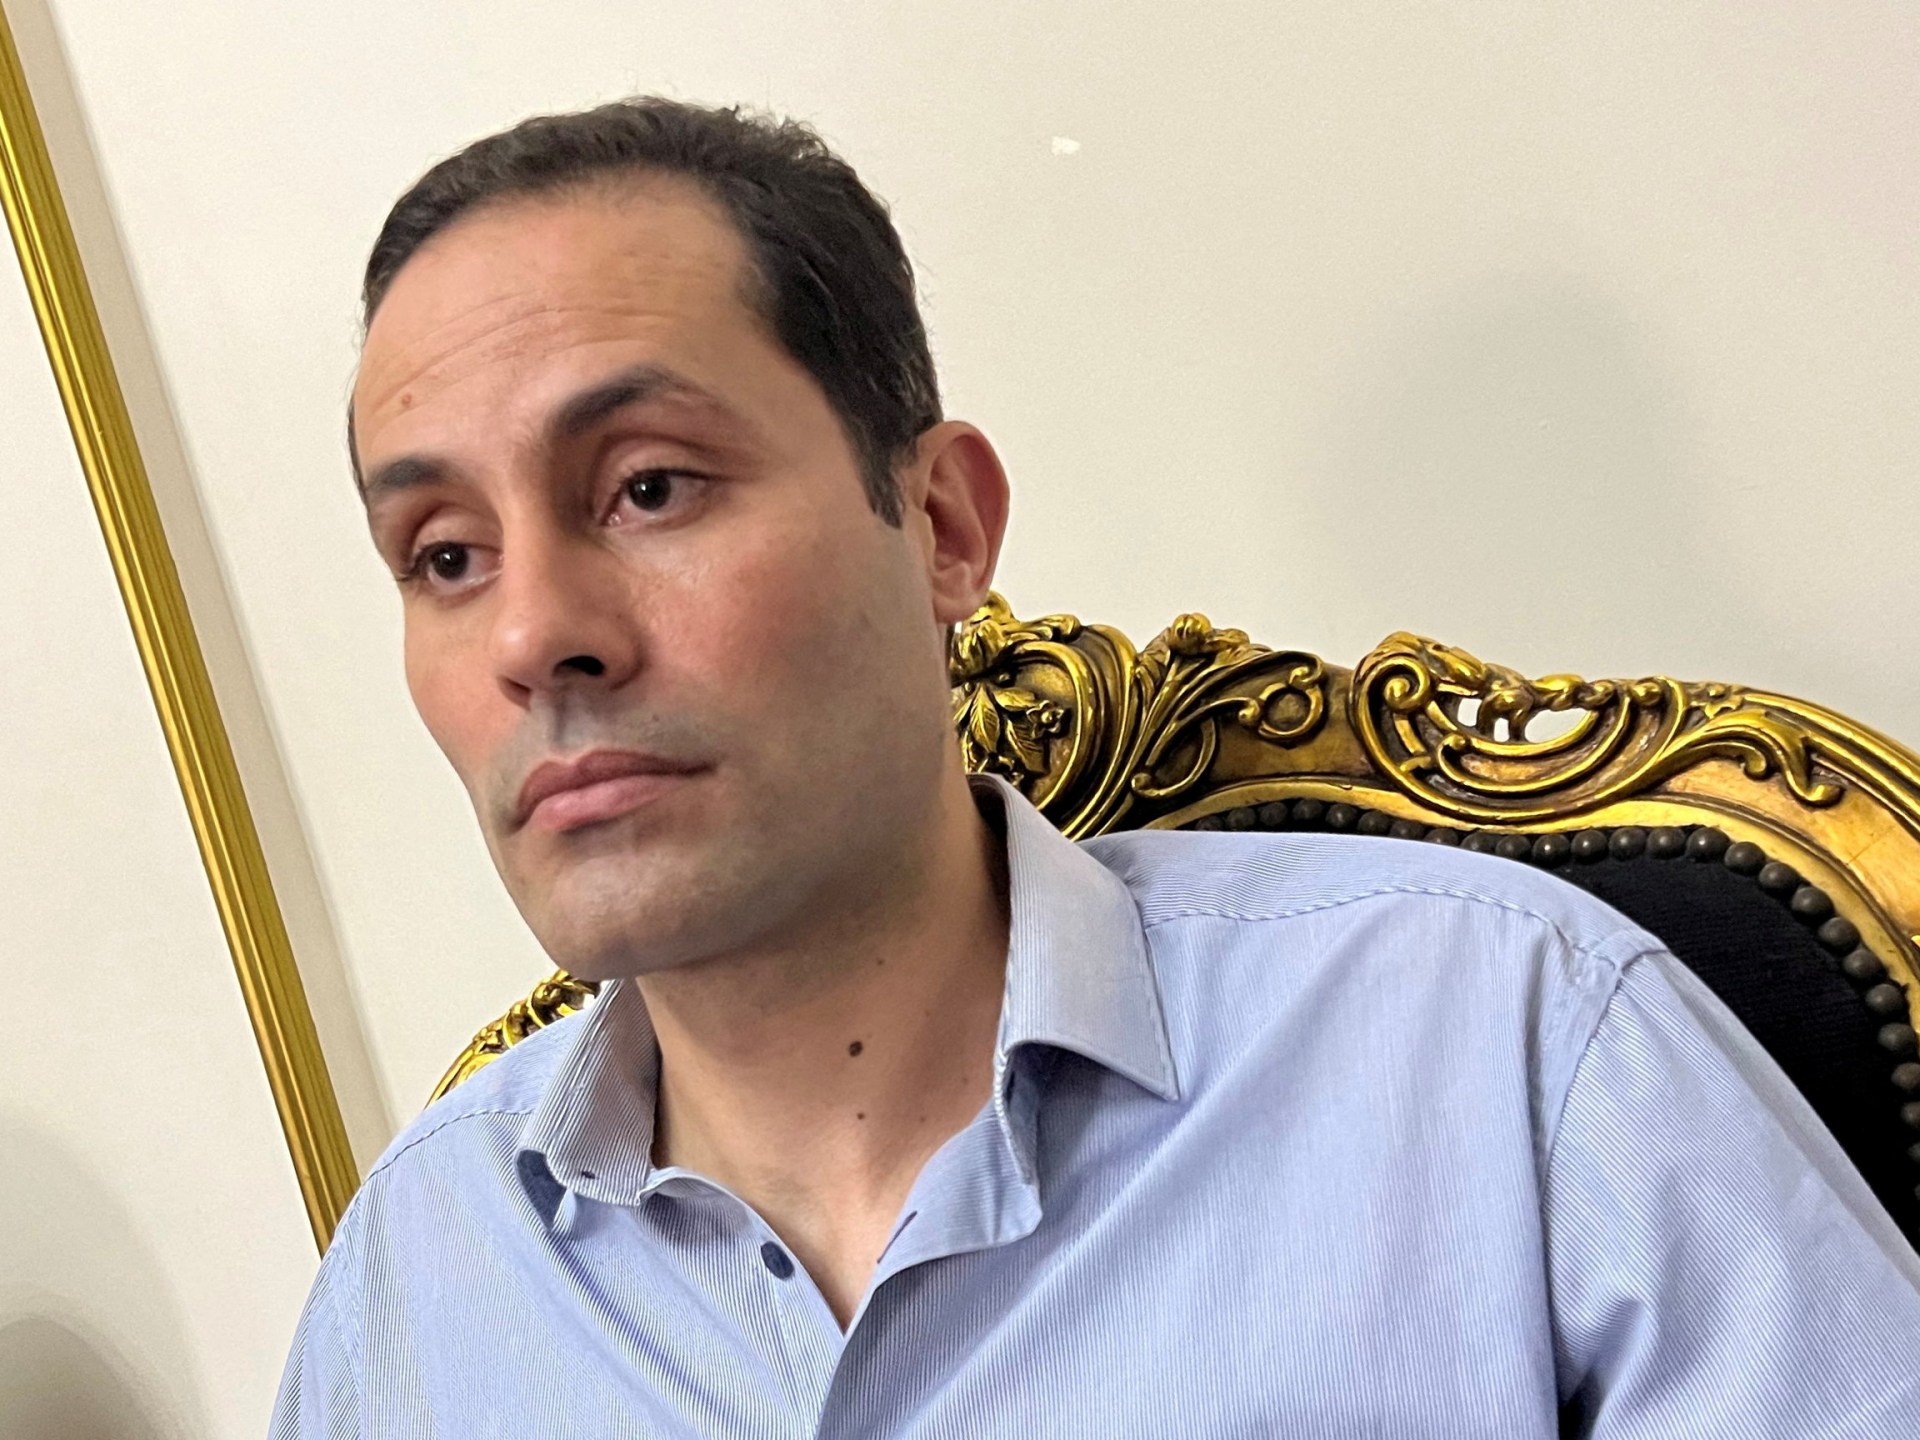 Calon presiden perencanaan mantan anggota parlemen Mesir mengatakan kerabat ditangkap |  Berita Abdel Fattah el-Sisi